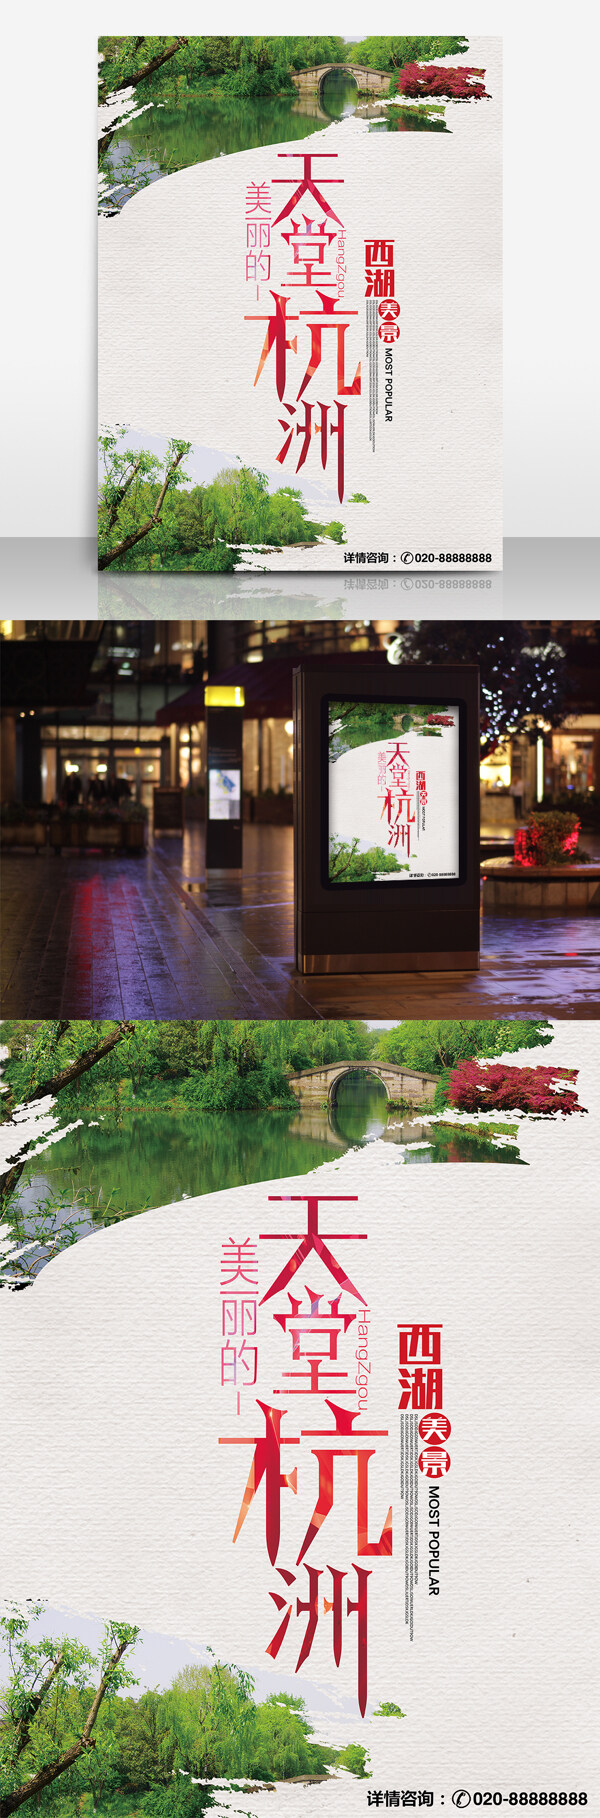 天堂杭州旅行社宣传海报